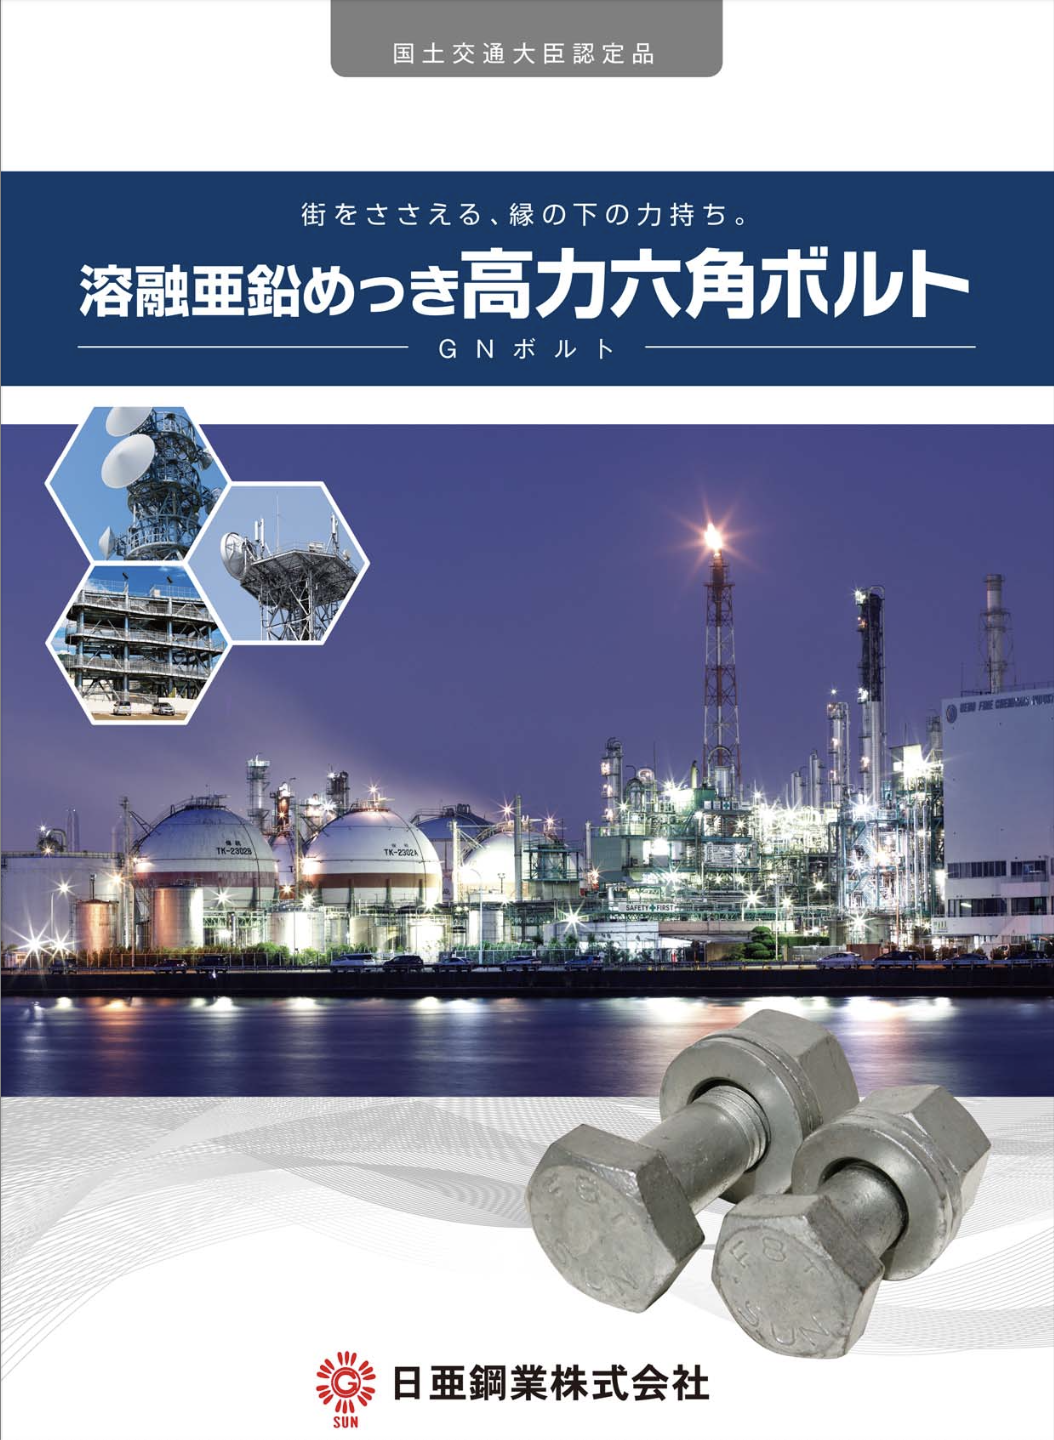 溶融亜鉛めっき高力六角ボルト(GNボルト) カタログ | 日亜鋼業株式会社